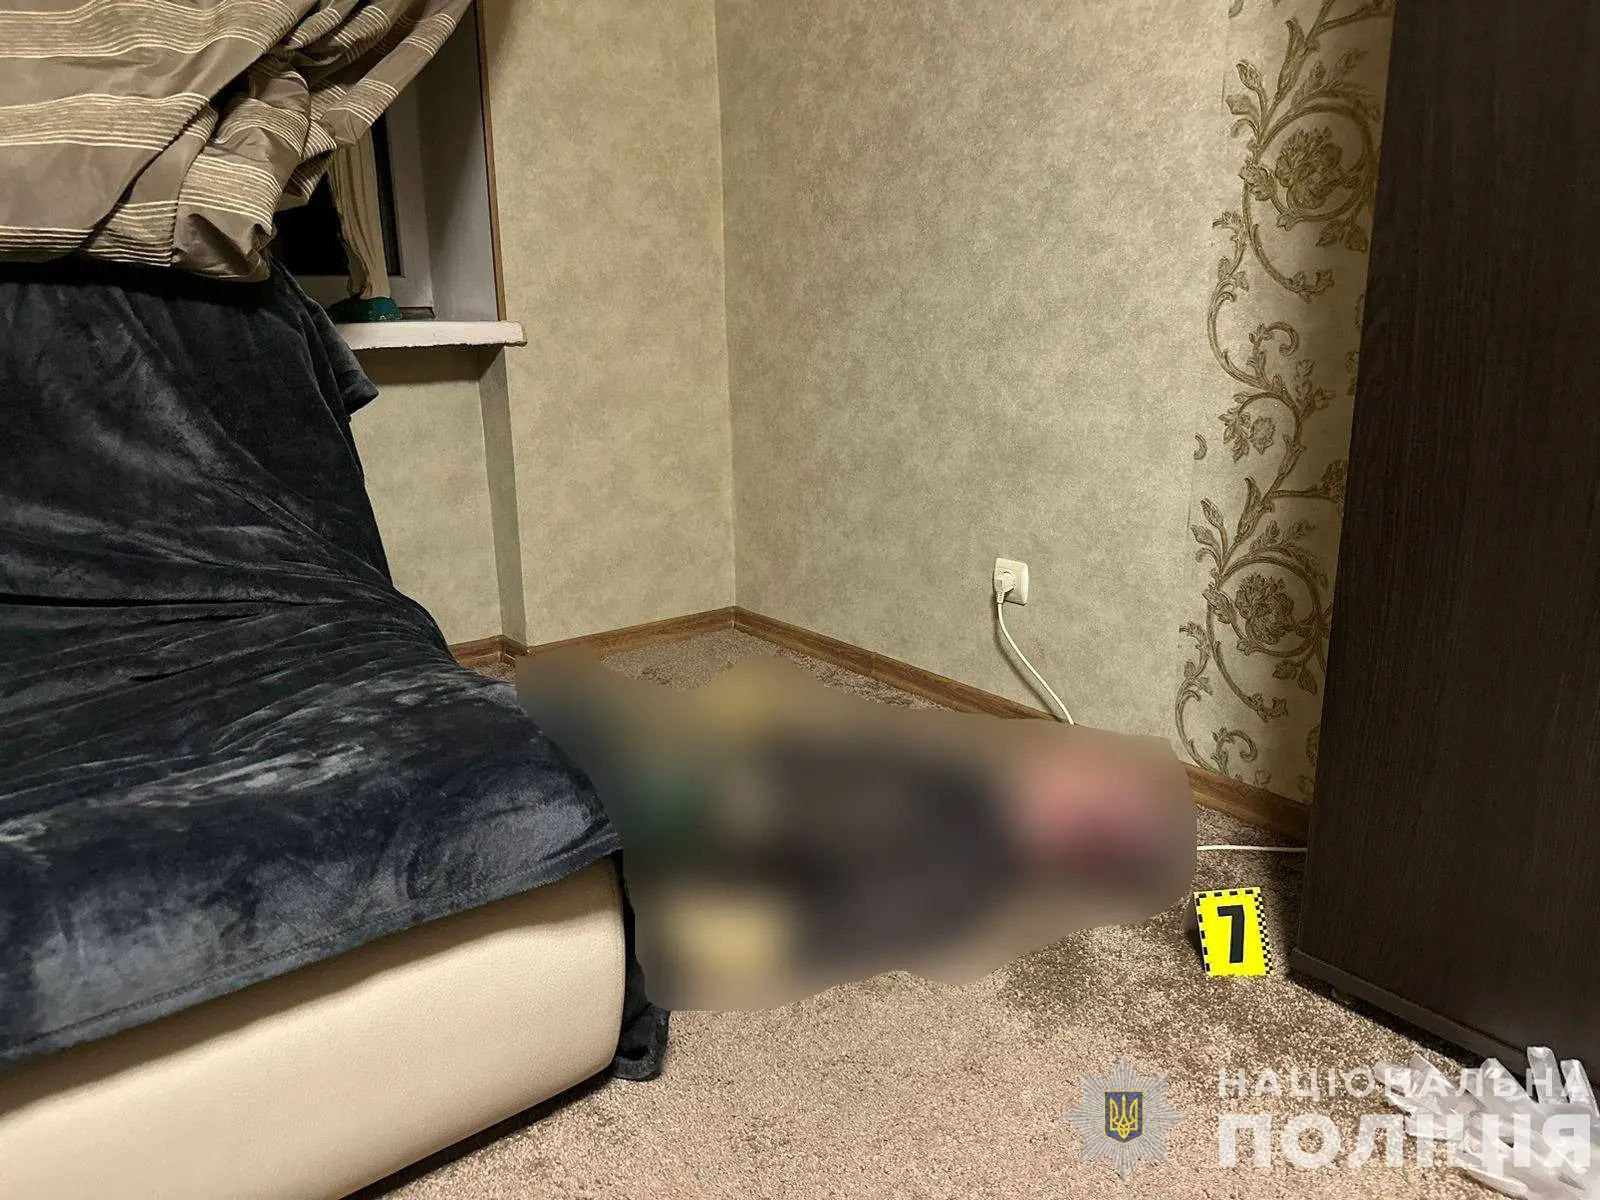 Вбивство в Ужгороді: 35 річний ужгородець задушив свою 23-річну «гостю», яка цілила в нього з пістолету1